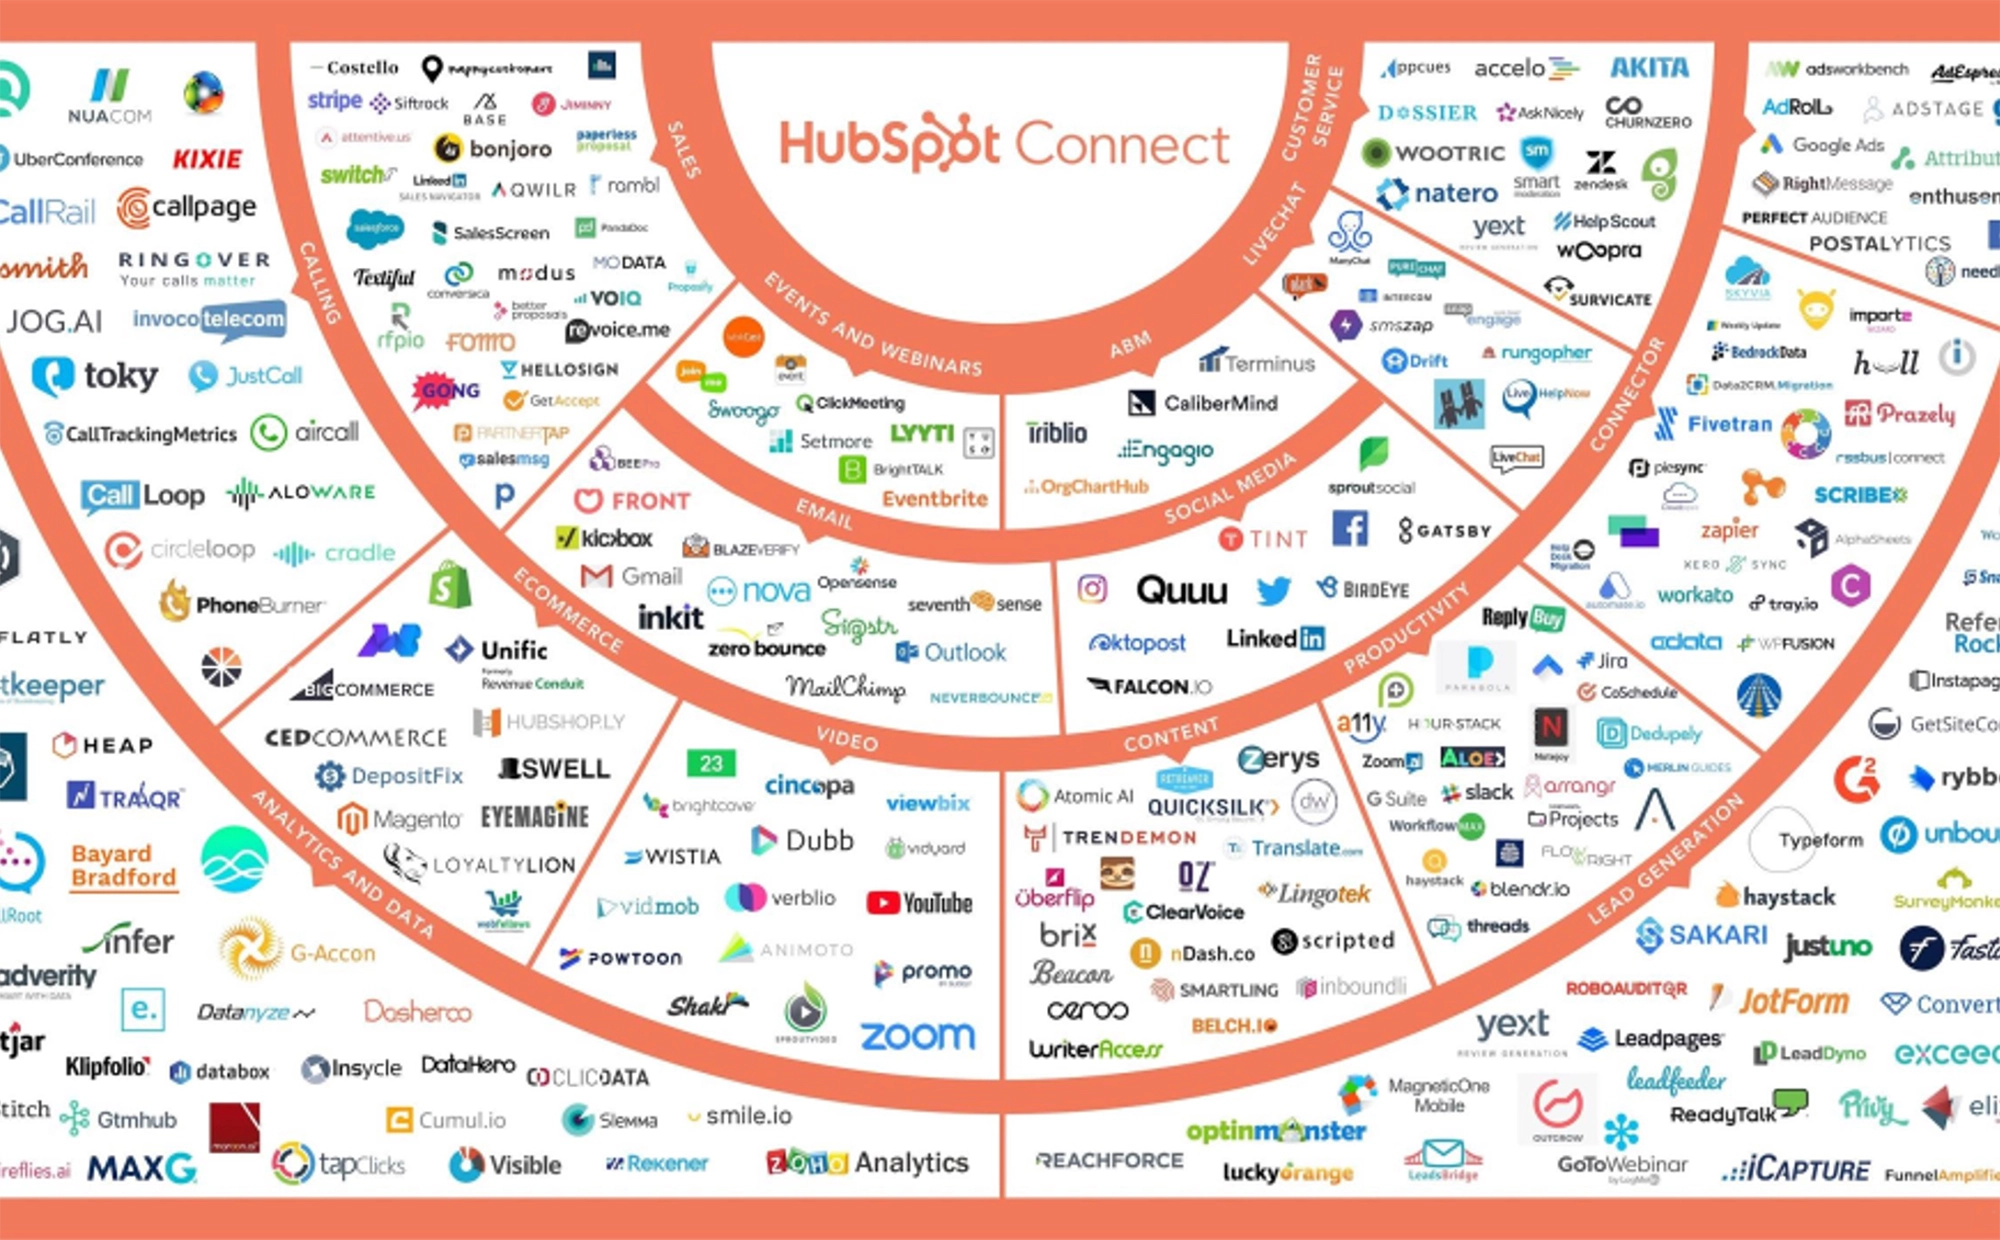 HubSpot Connect